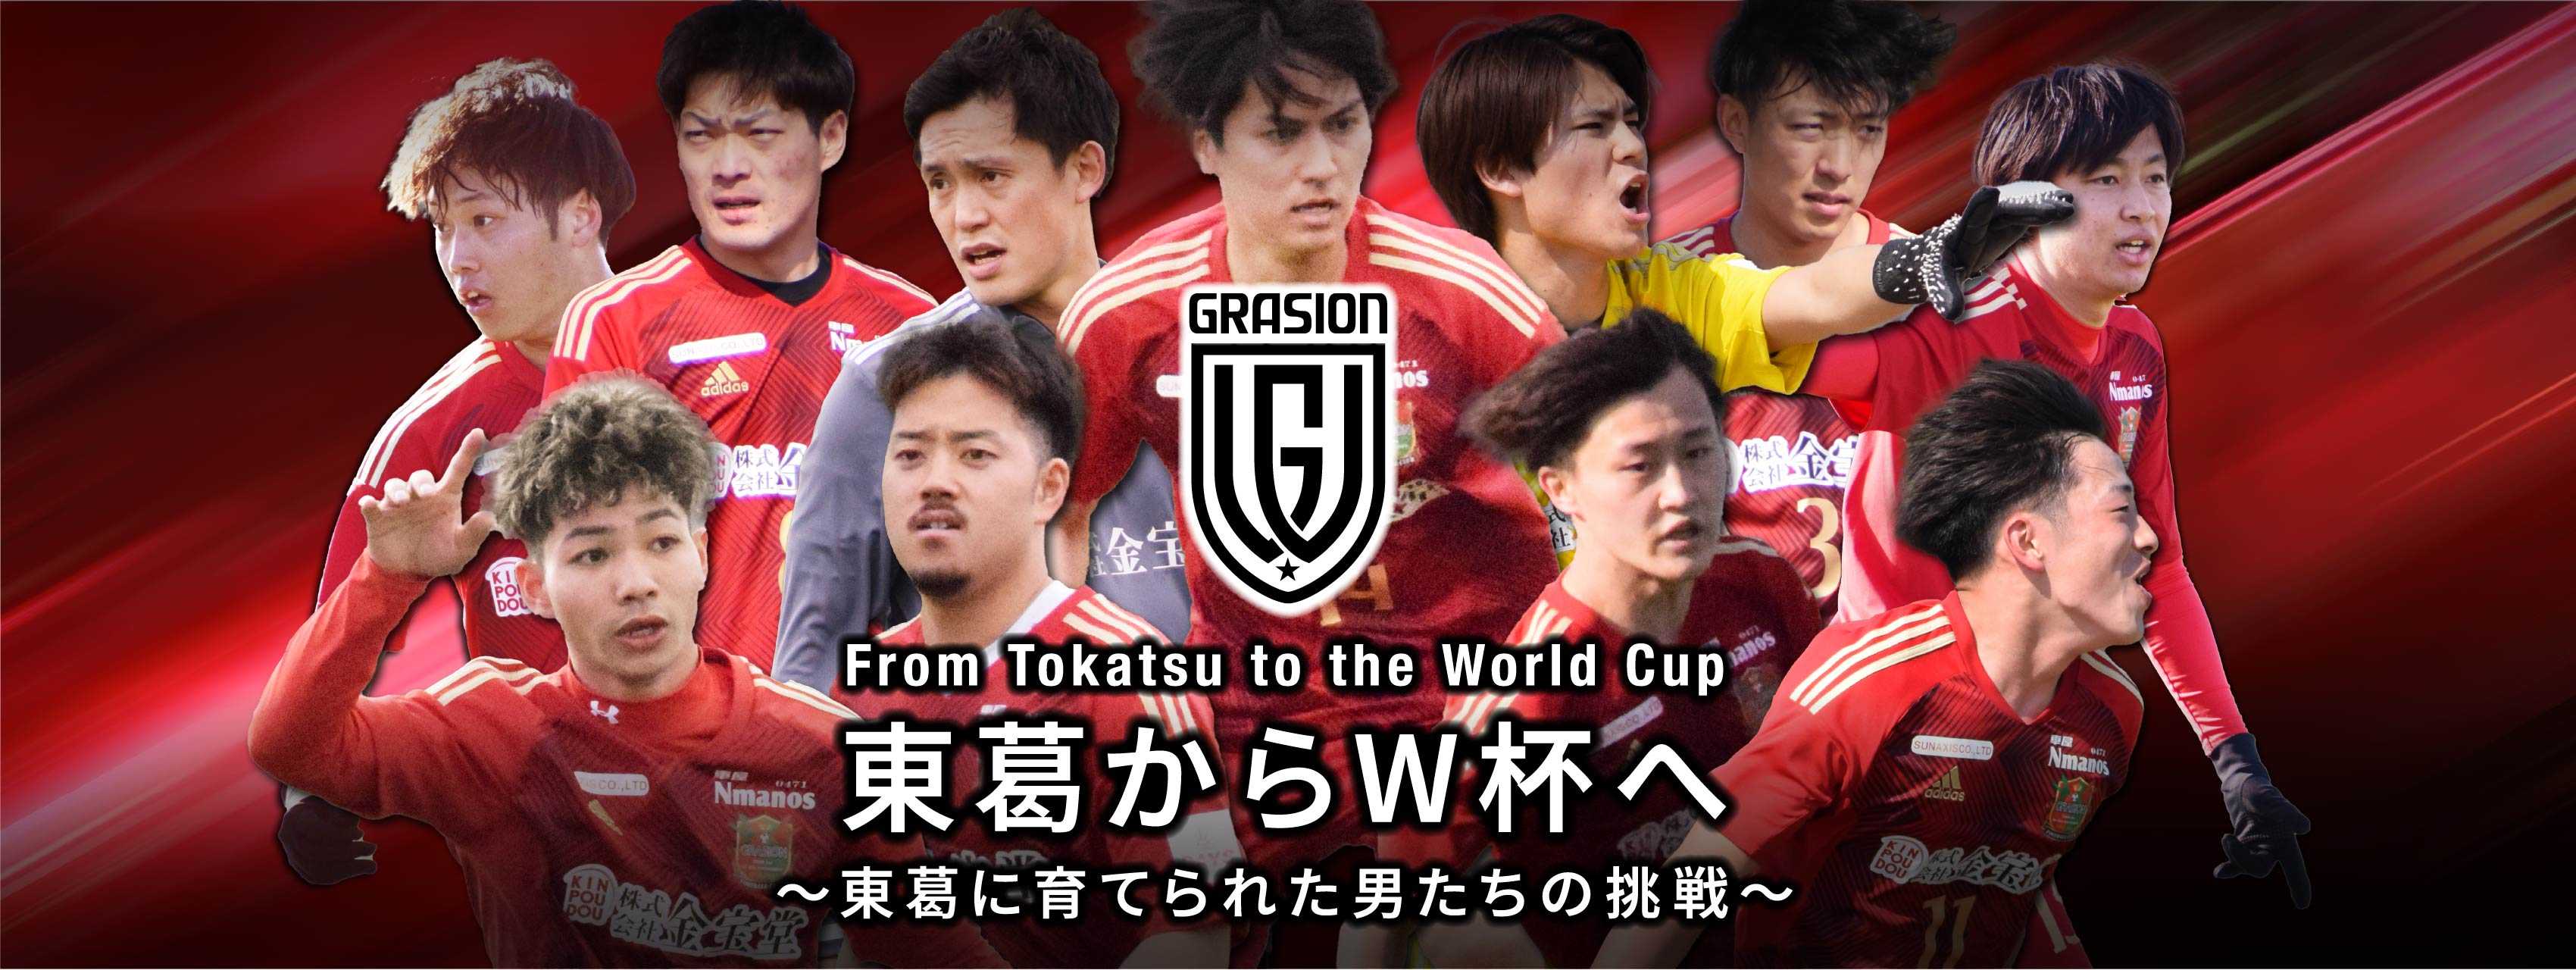 東葛からWカップへ From Tokatsu to the World Cup